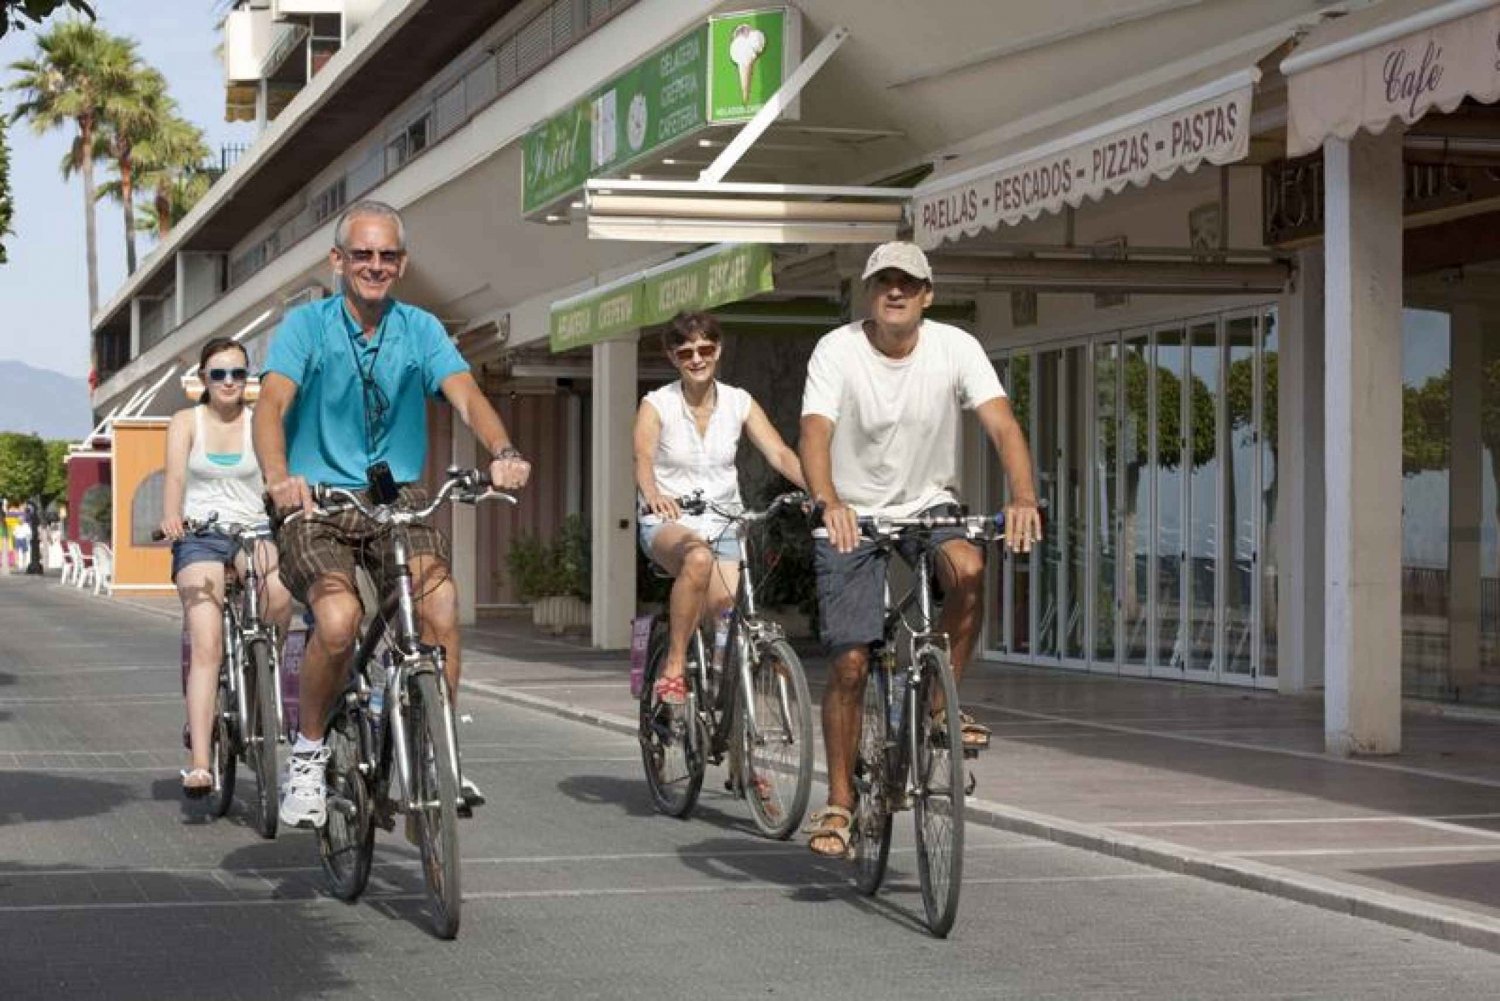 Bike Tour of Marbella: Old City, Harbor, Parks